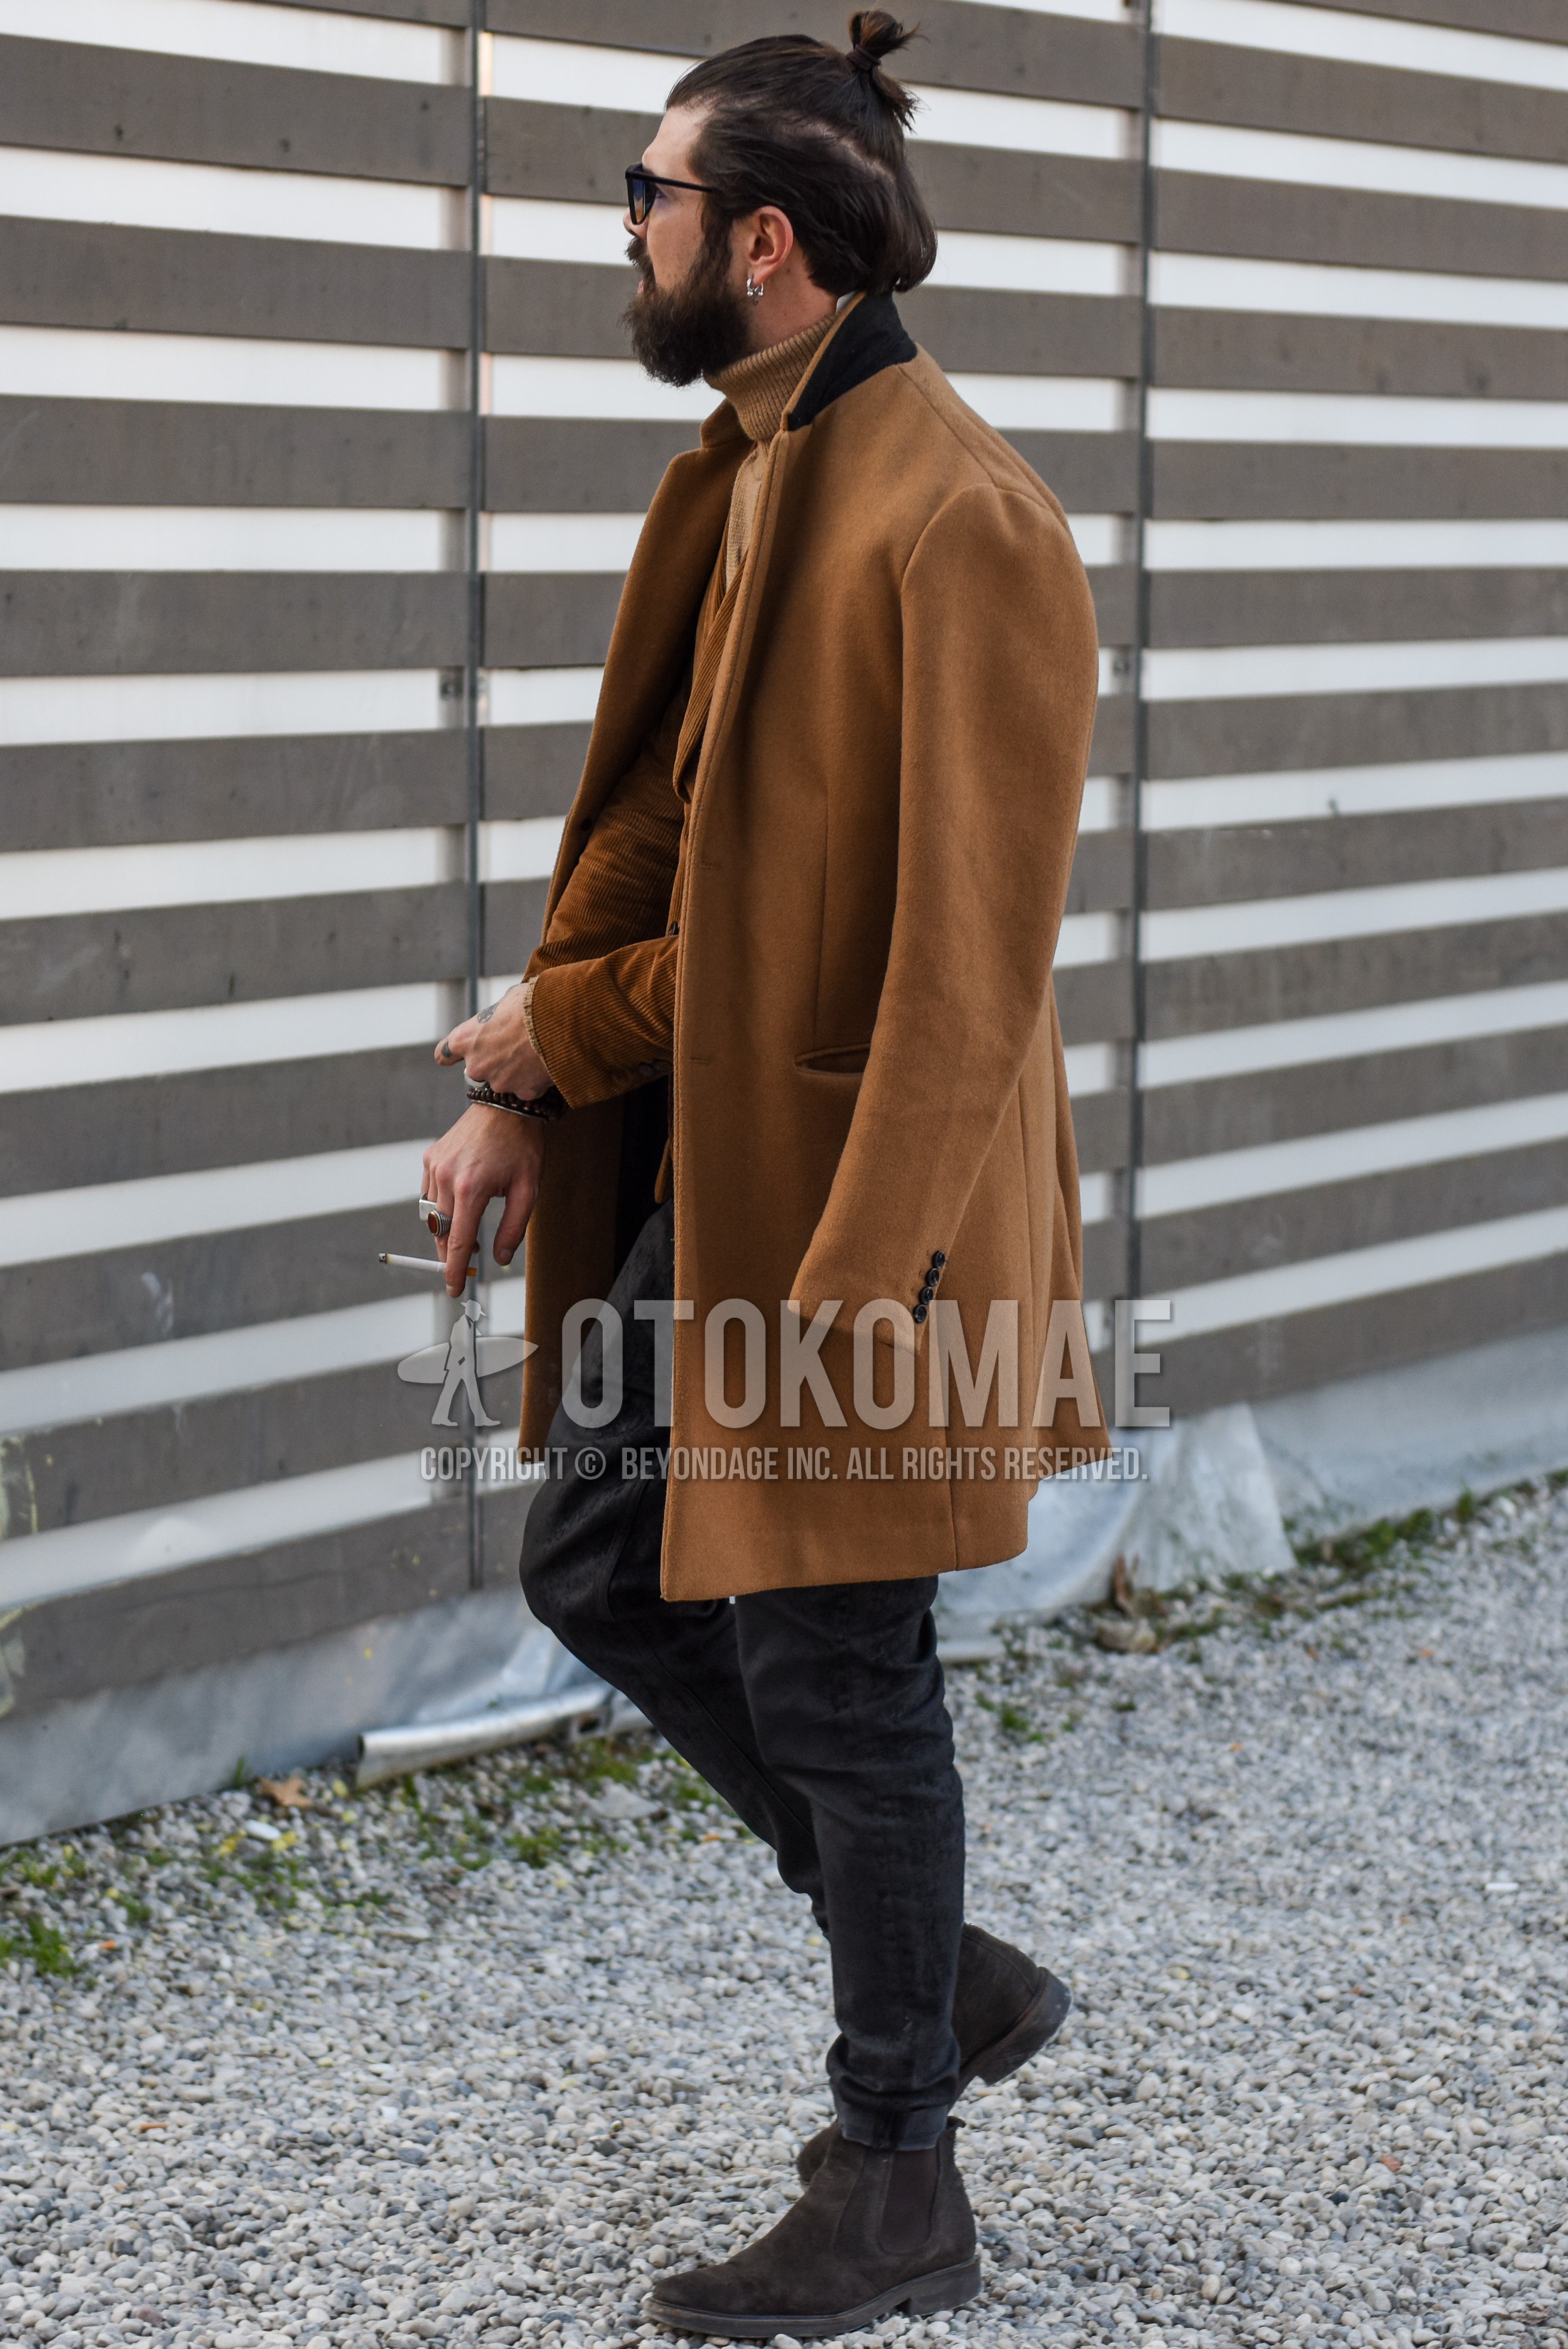 Men's autumn winter outfit with black plain sunglasses, beige plain chester coat, beige plain tailored jacket, beige plain turtleneck knit, dark gray plain denim/jeans, brown side-gore boots.